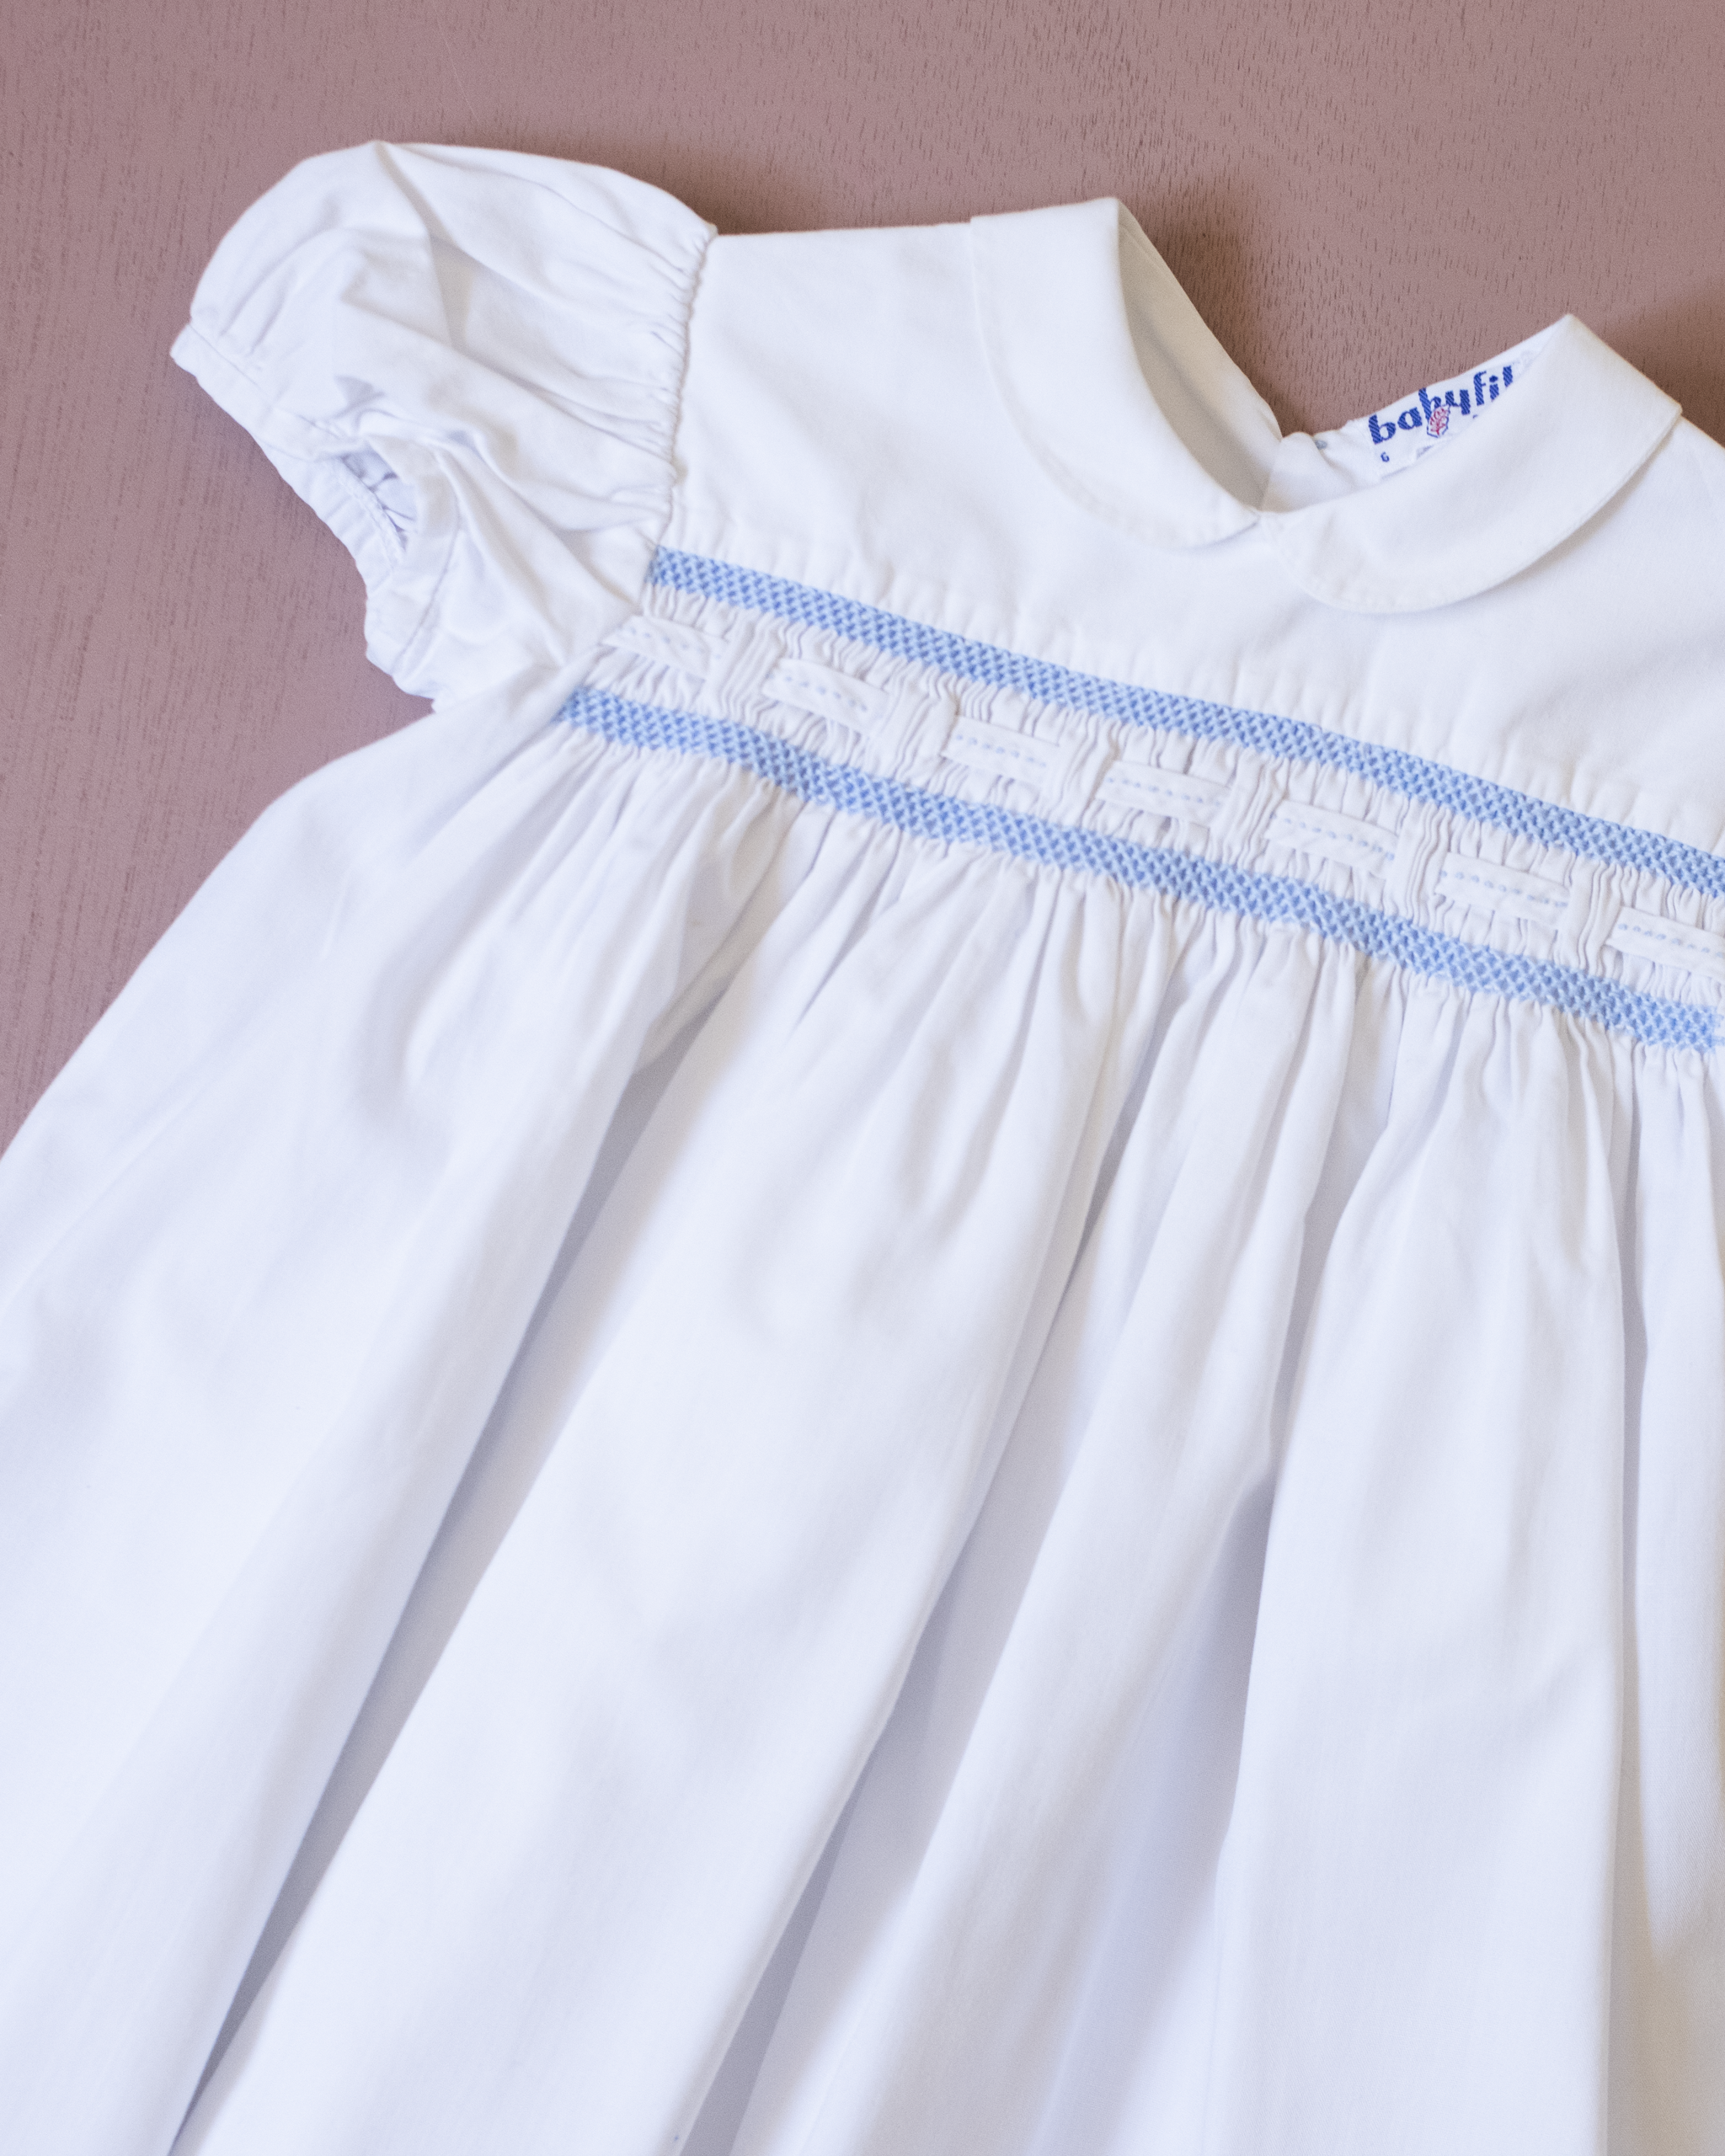 שמלה לבנה עם רקמות | 12-18 חודשים